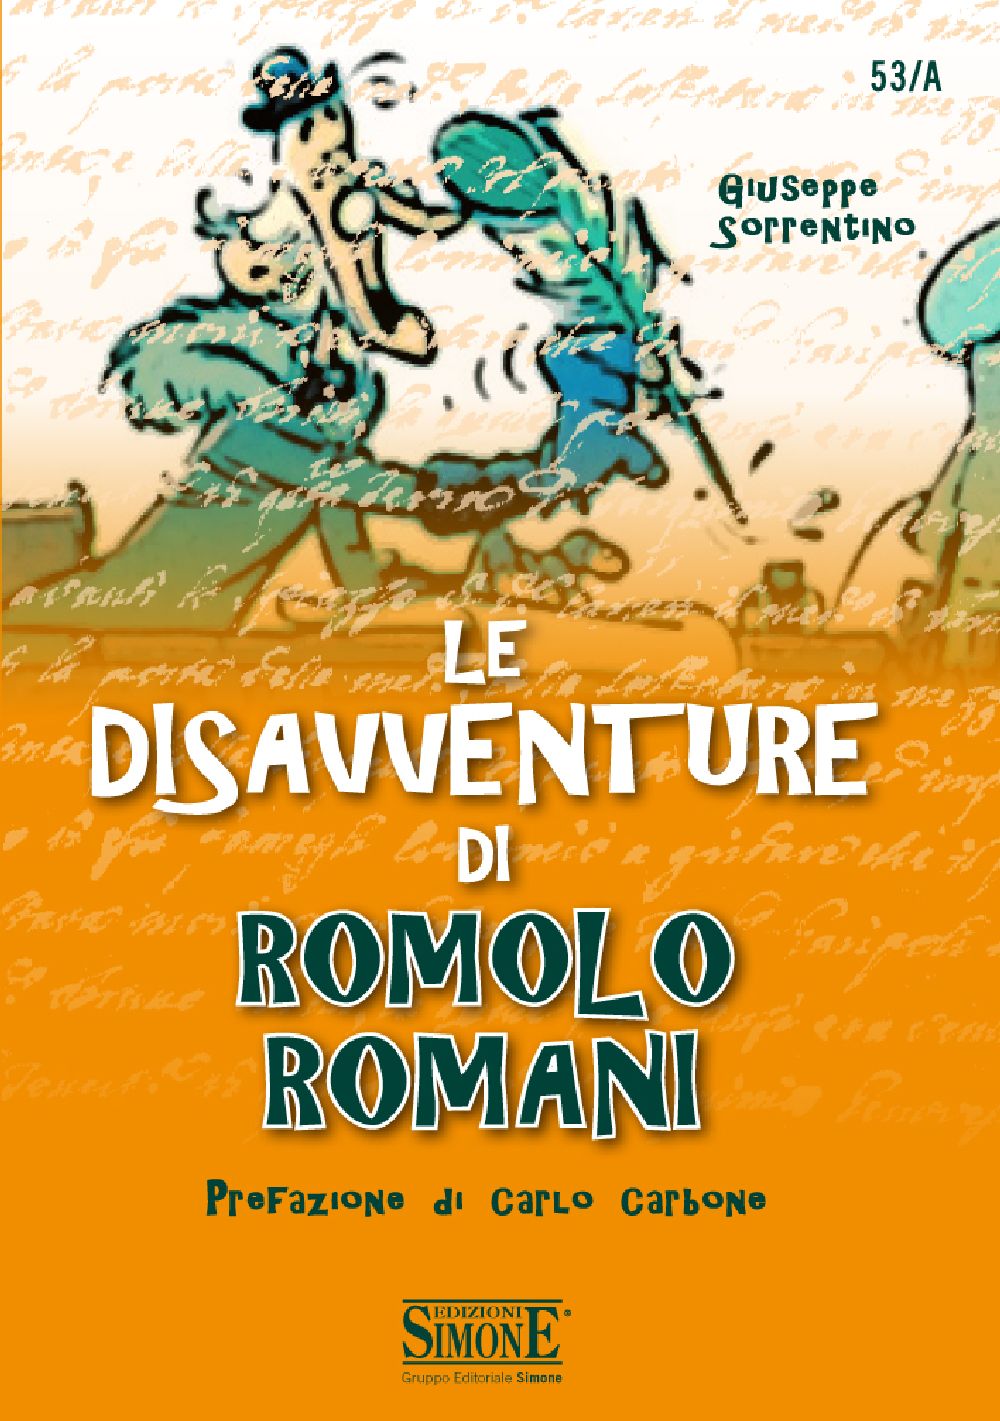 [Ebook] Le disavventure di Romolo Romani